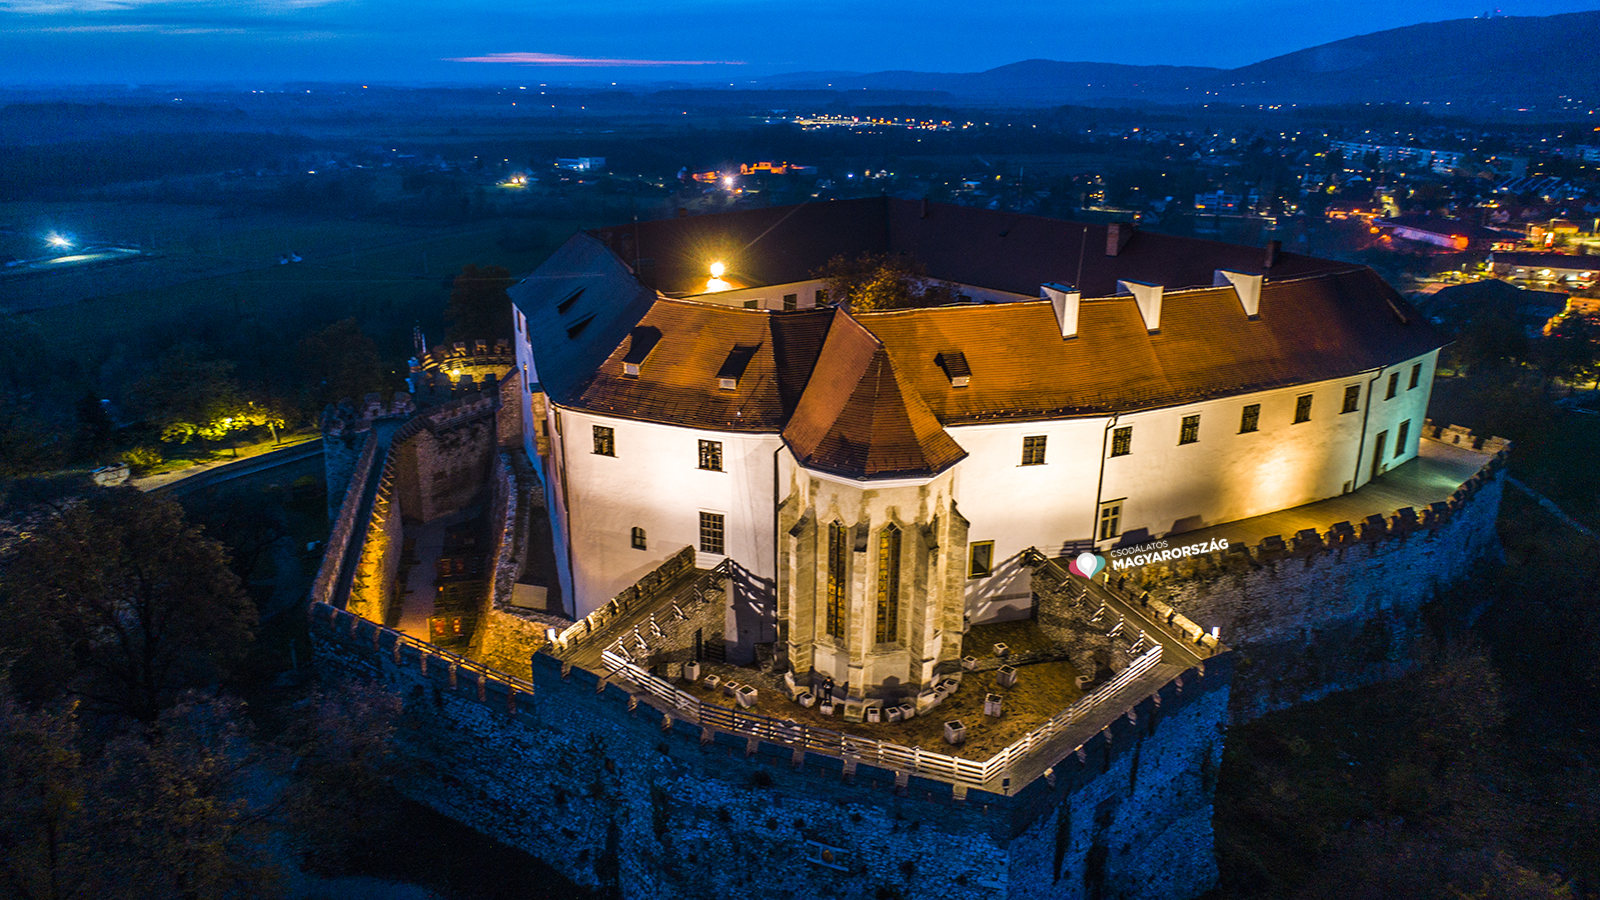 Siklos castle